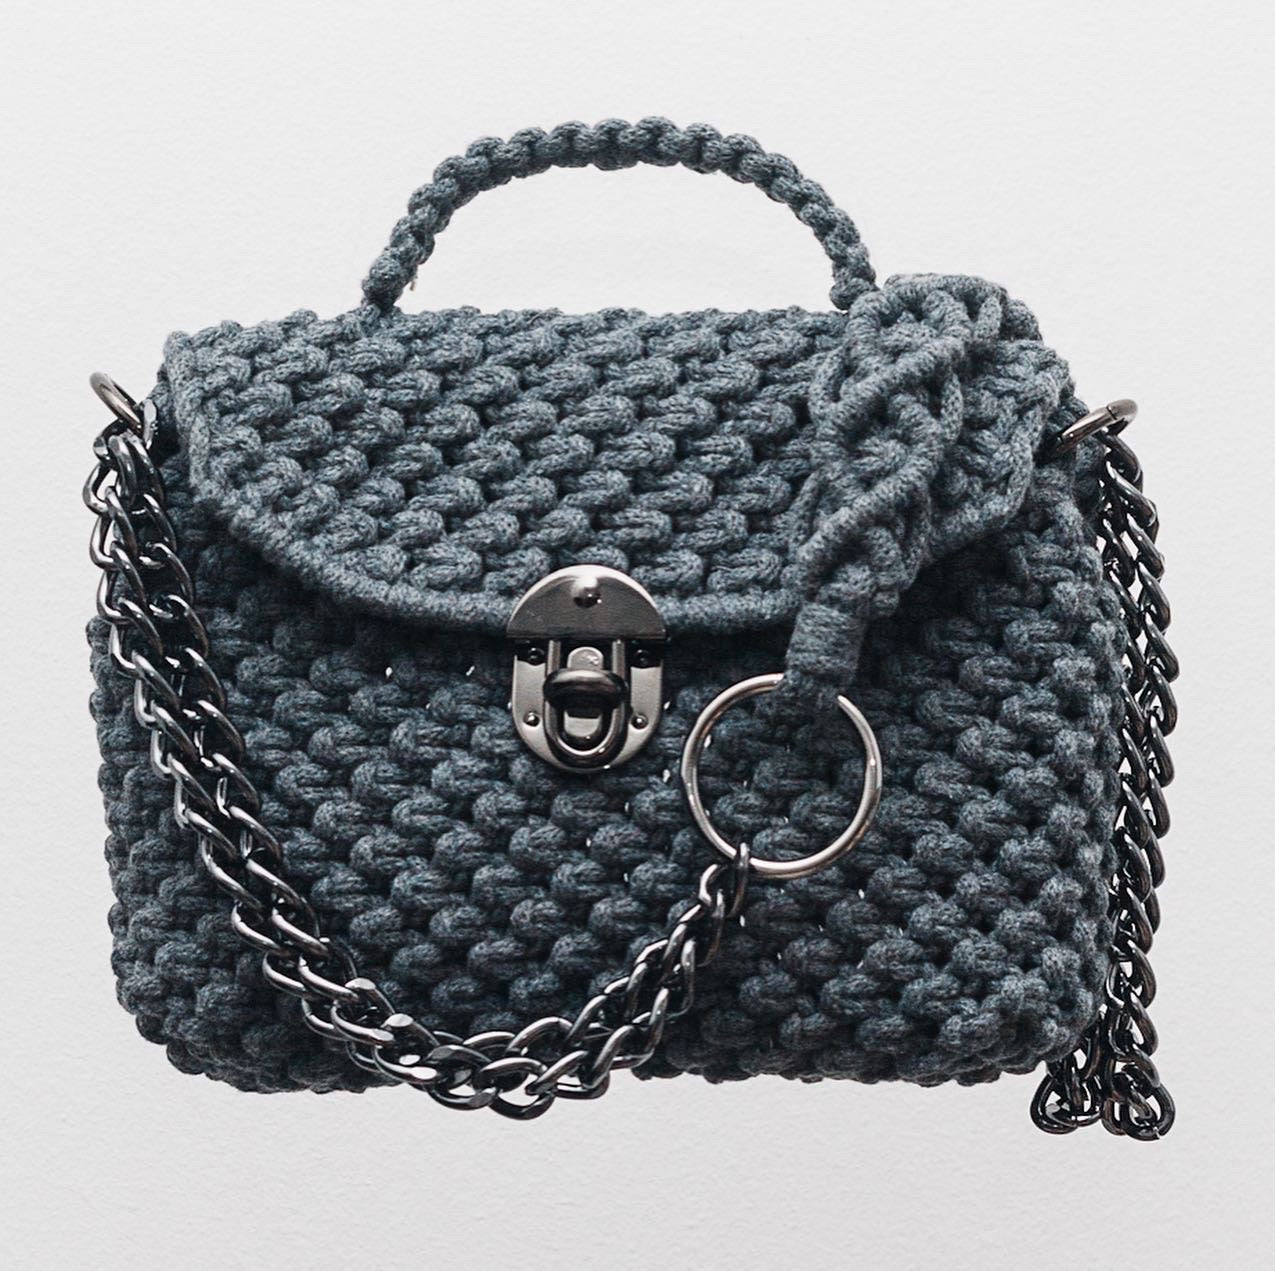 cinderella-macrame-handbag-image